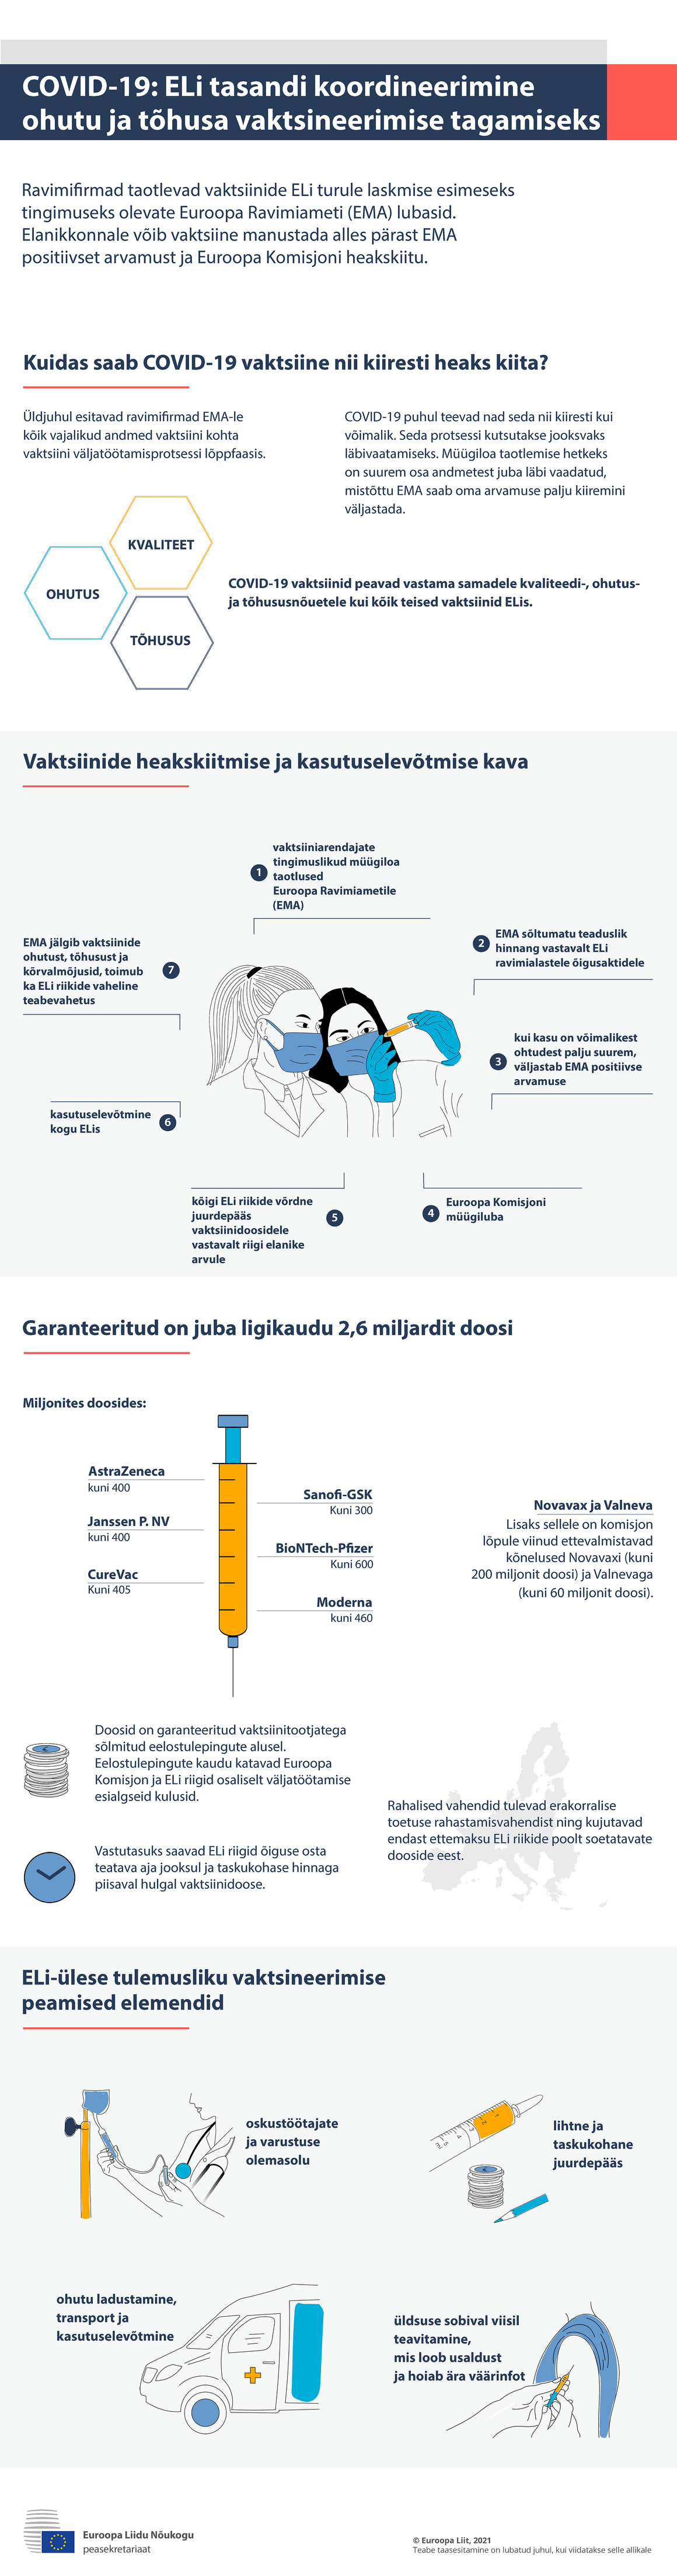  Infograafik – COVID-19: ELi tasandi koordineerimine ohutu ja tõhusa vaktsineerimise tagamiseks